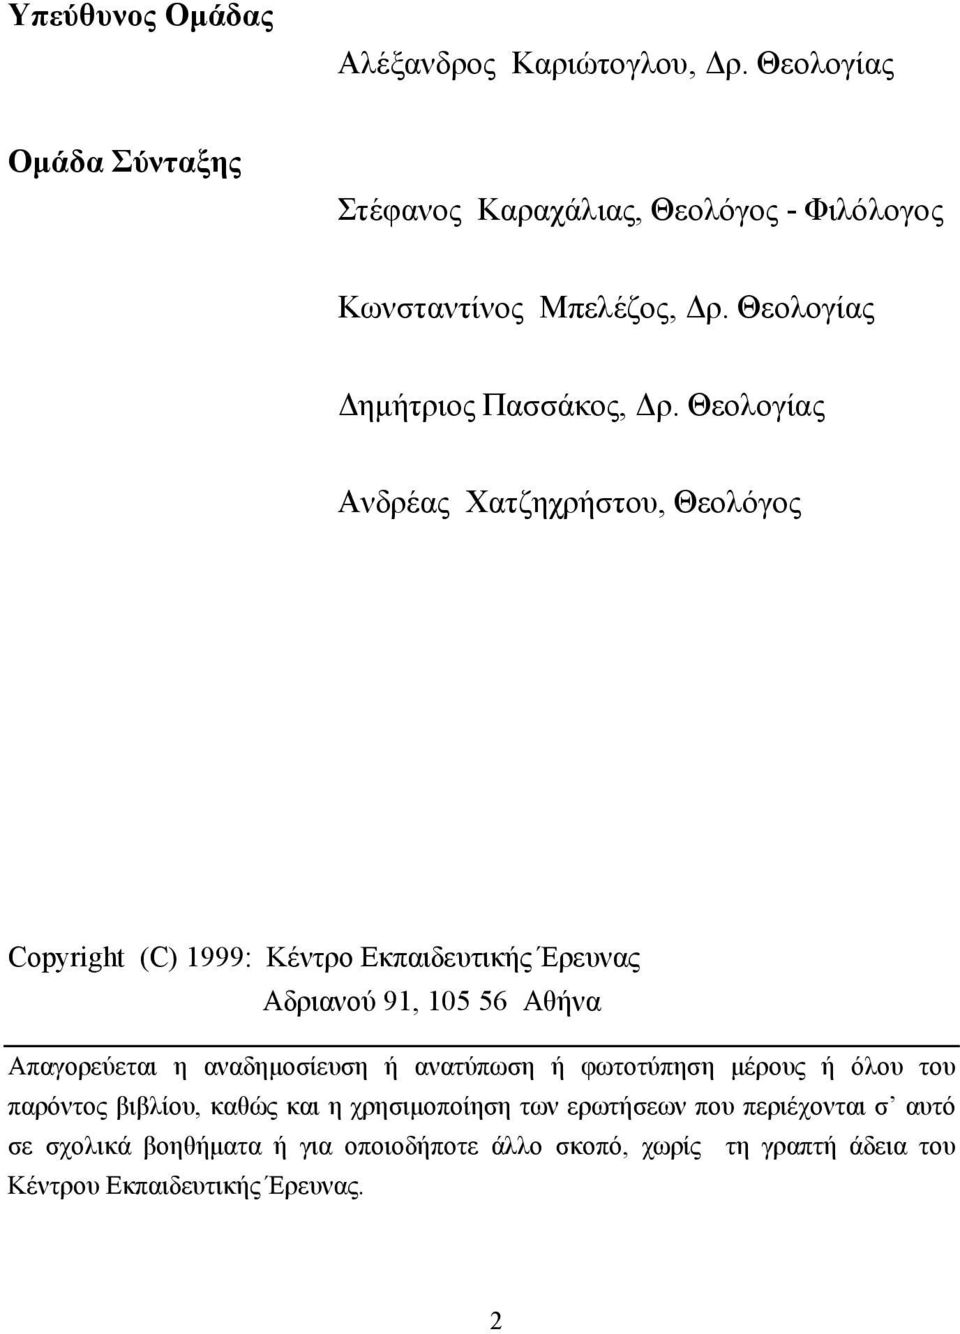 Θεολογίας Ανδρέας Χατζηχρήστου, Θεολόγος Copyright (C) 1999: Κέντρο Εκπαιδευτικής Έρευνας Αδριανού 91, 105 56 Αθήνα Απαγορεύεται η